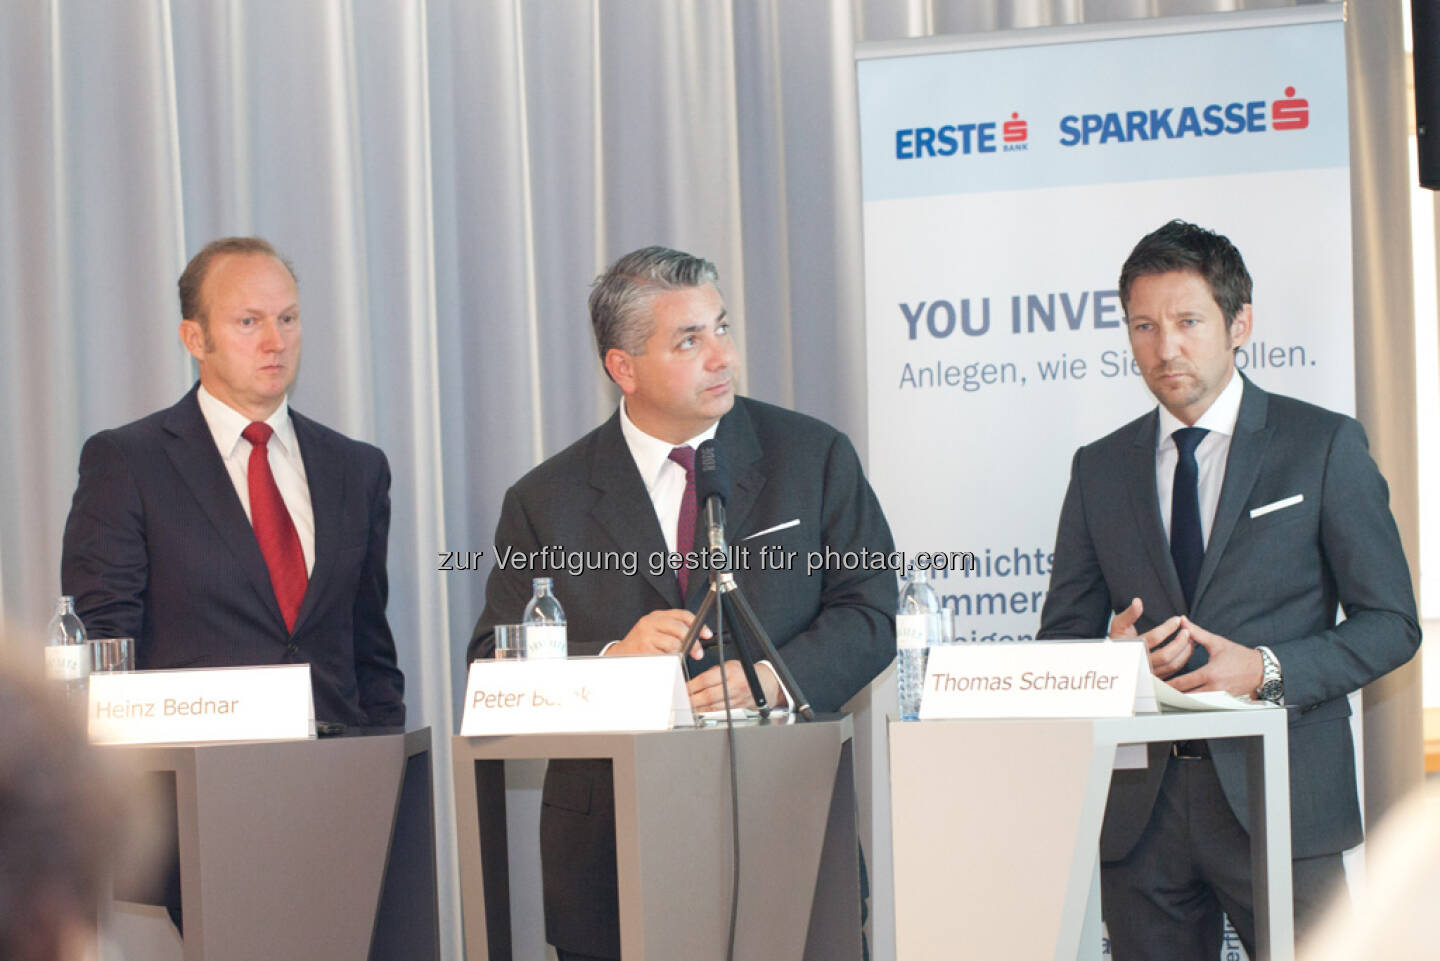 Heinz Bednar (Erste-Sparinvest) Vorstandsvorsitzender, Peter Bosek (Erste Bank Österreich Vorstand), Thomas Schaufler (Erste Asset Management Vorstand)